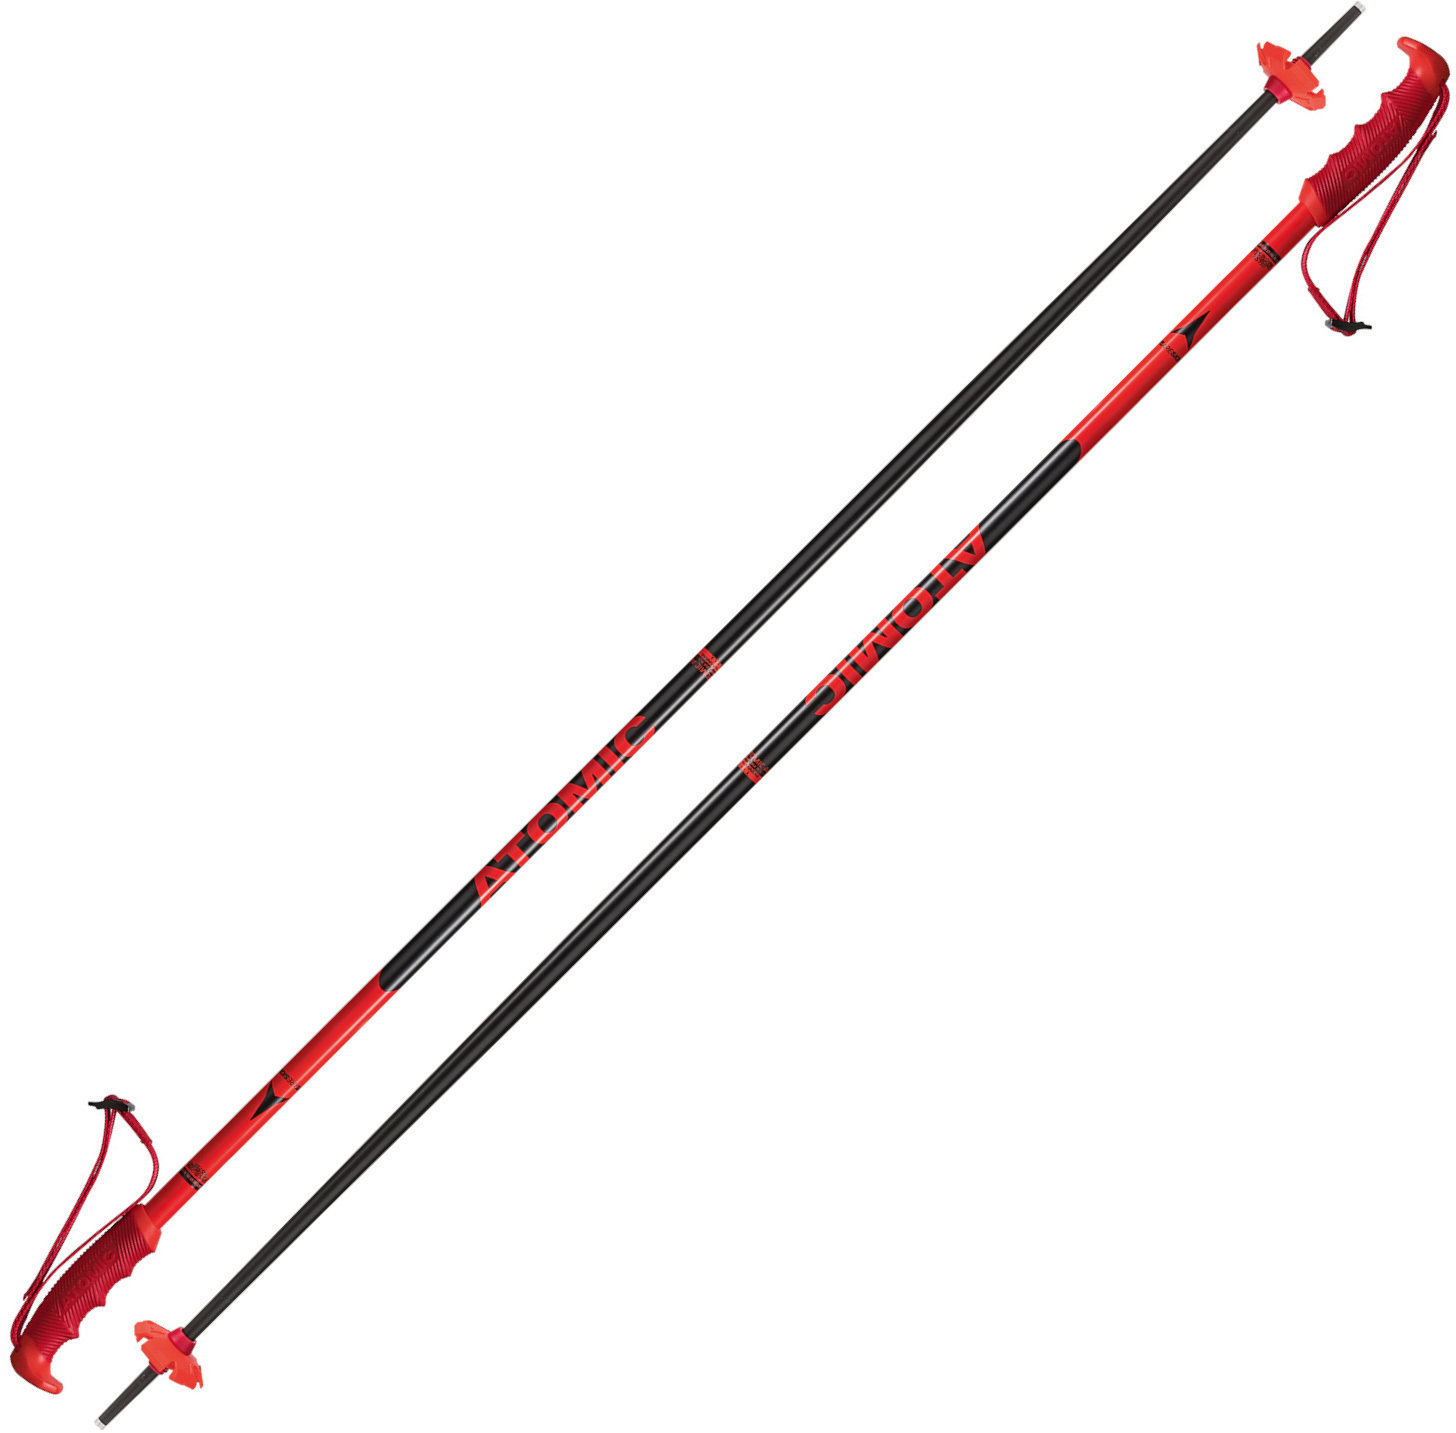 Ski-Stöcke Atomic Redster Red/Black 130 cm Ski-Stöcke